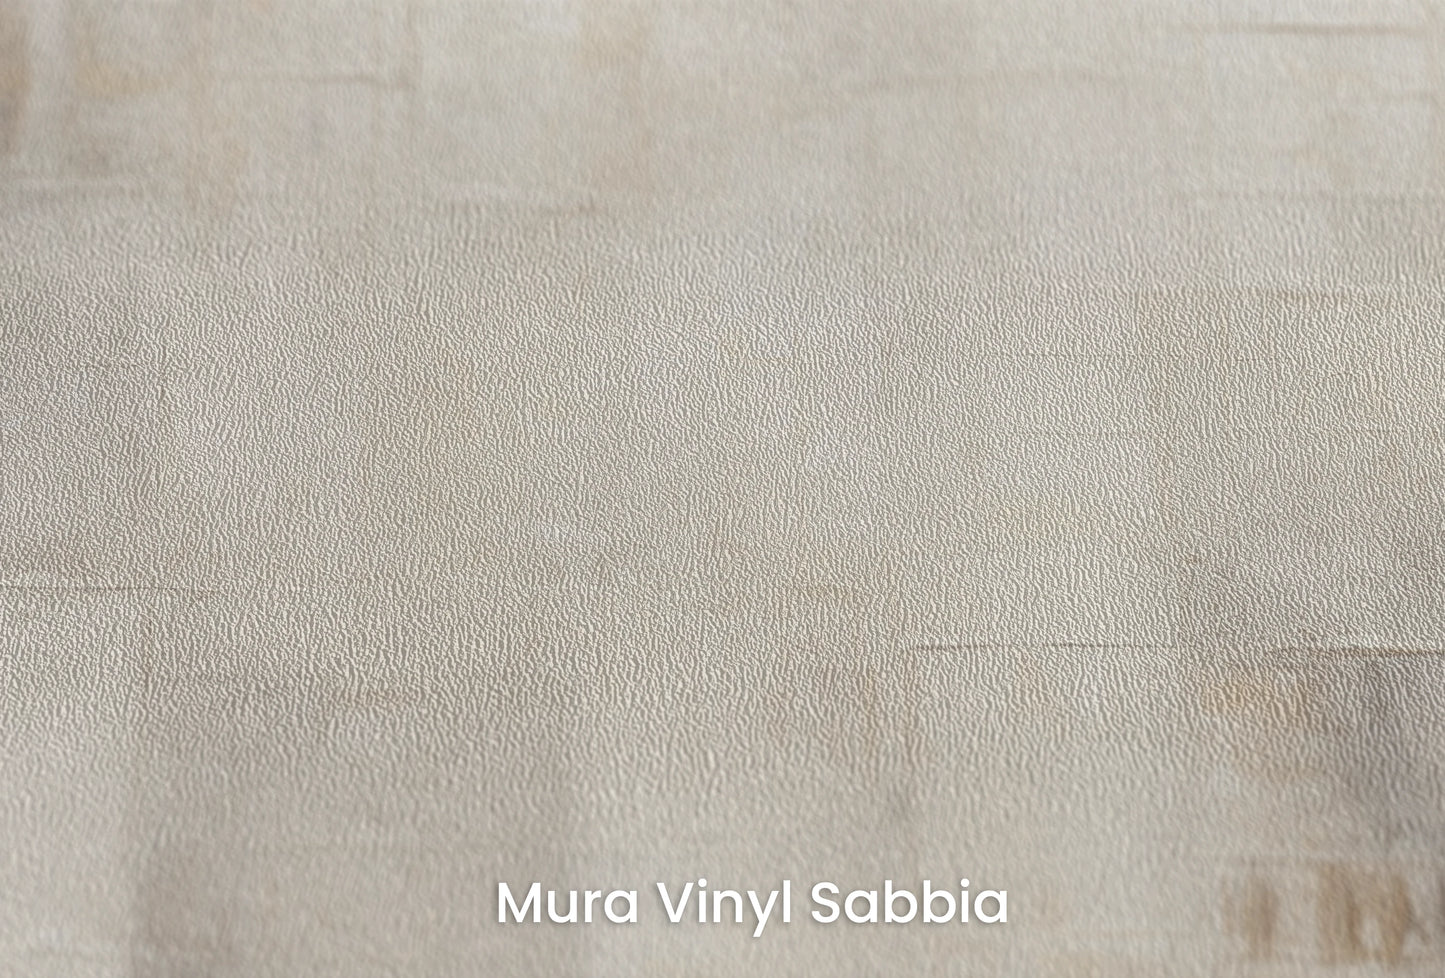 Zbliżenie na artystyczną fototapetę o nazwie Abstract Canvas na podłożu Mura Vinyl Sabbia struktura grubego ziarna piasku.